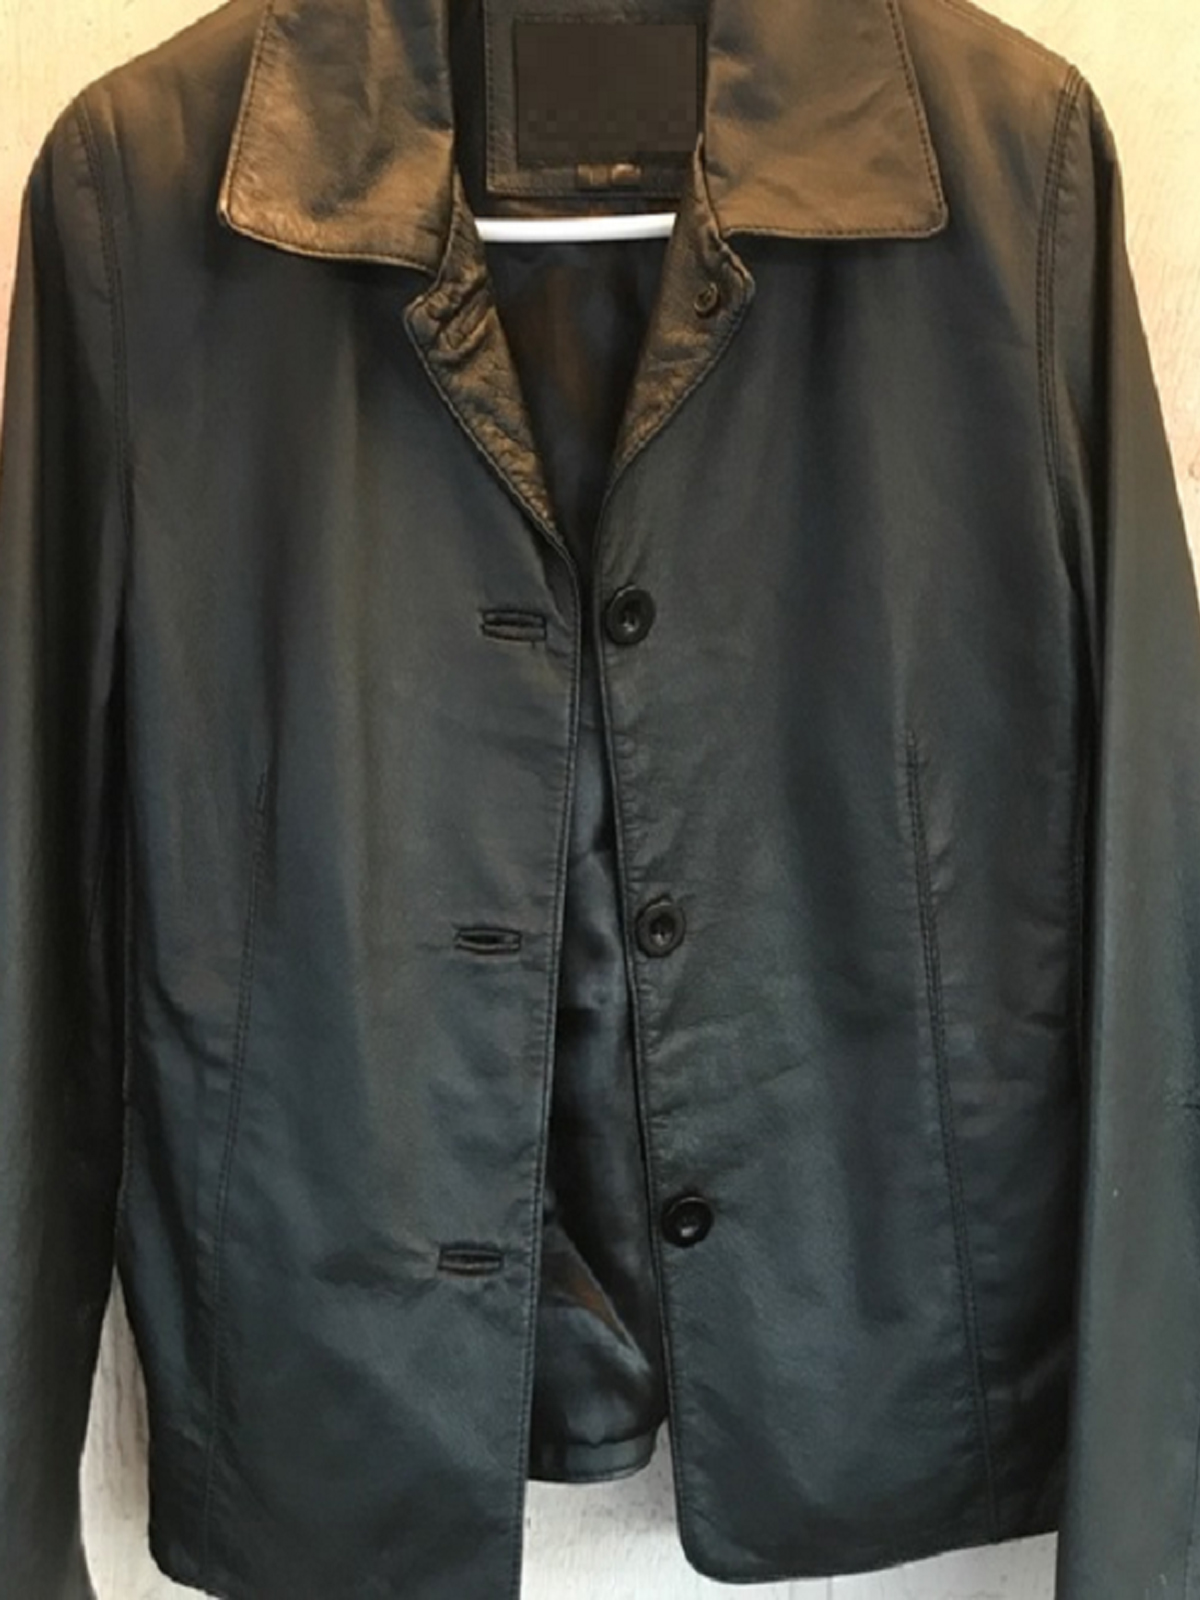 Men's Oscar Piel Leather Jacket